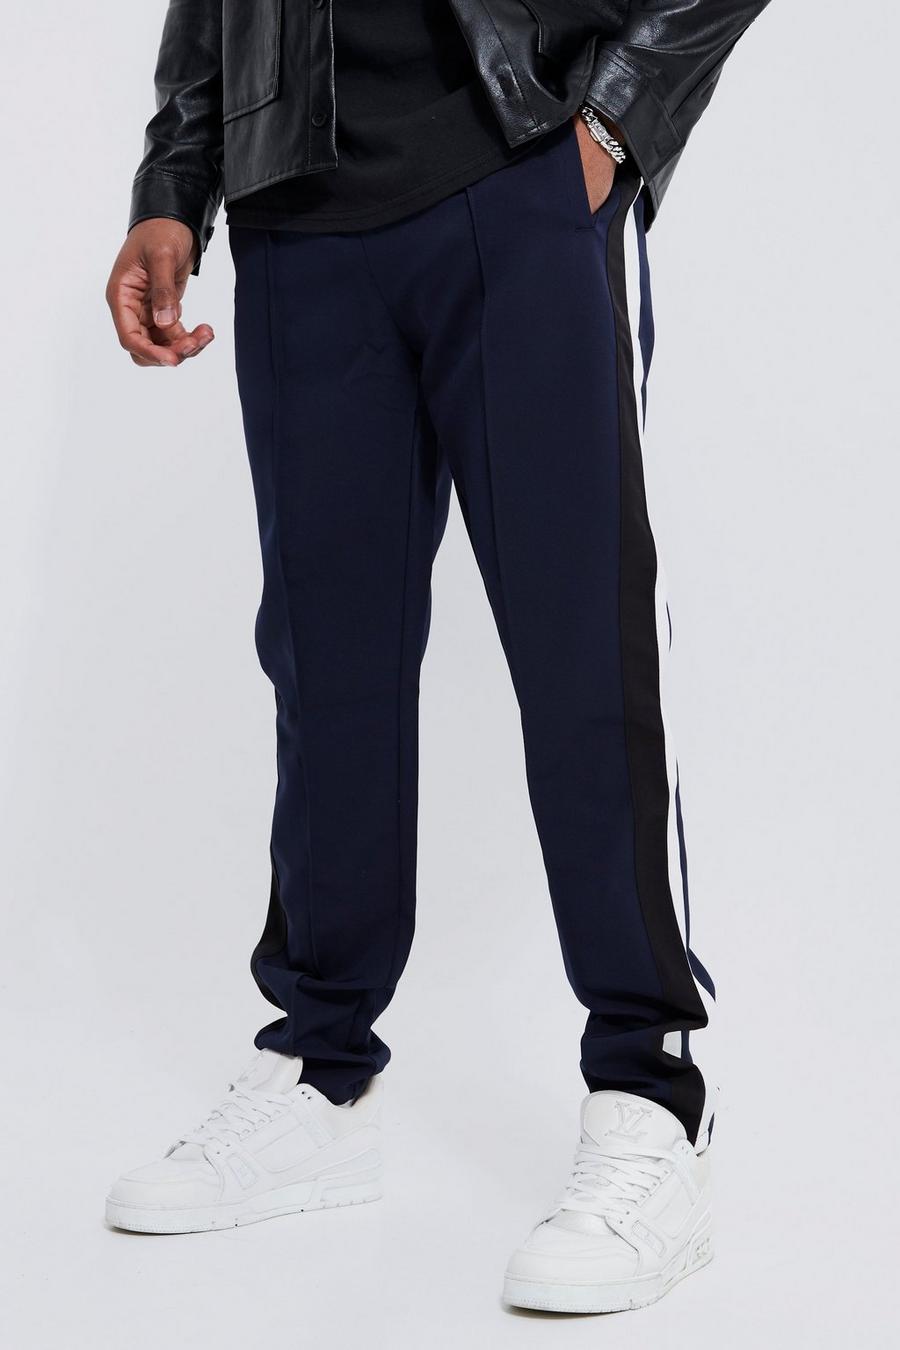 Pantalón Tall entallado con estampado universitario, Navy blu oltremare